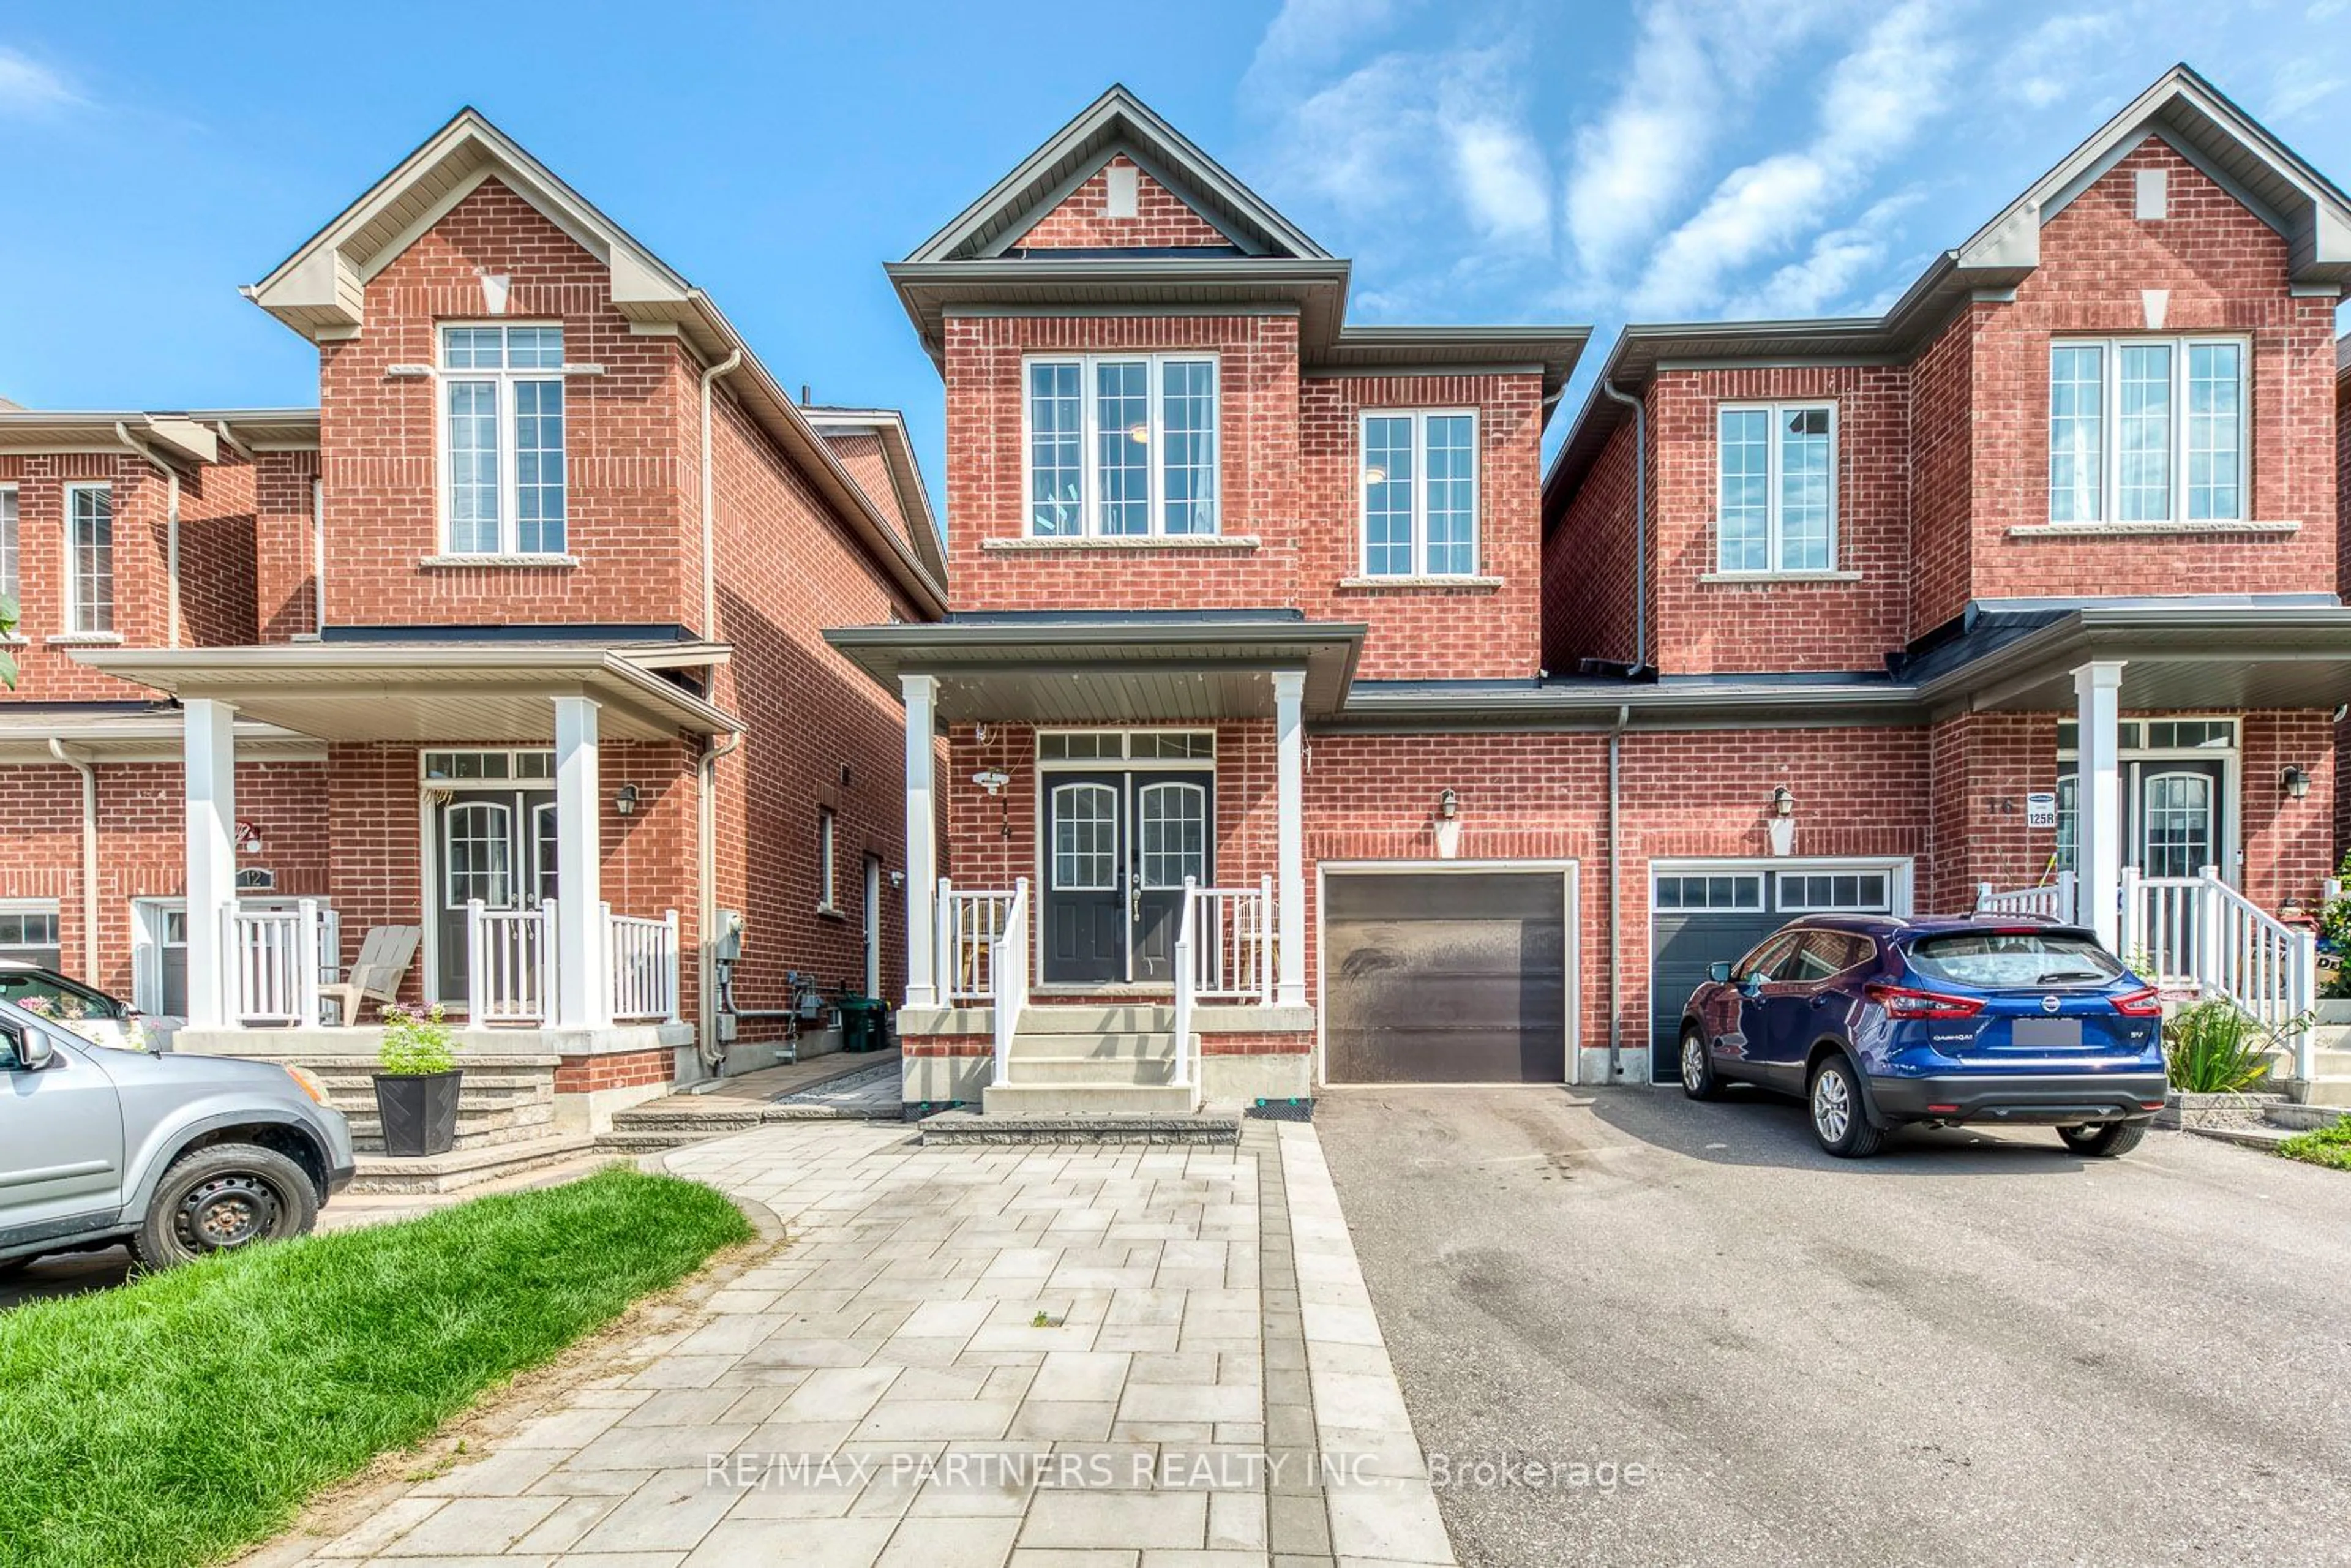 Home with brick exterior material for 14 Reddington Rd, Markham Ontario L3S 0E2